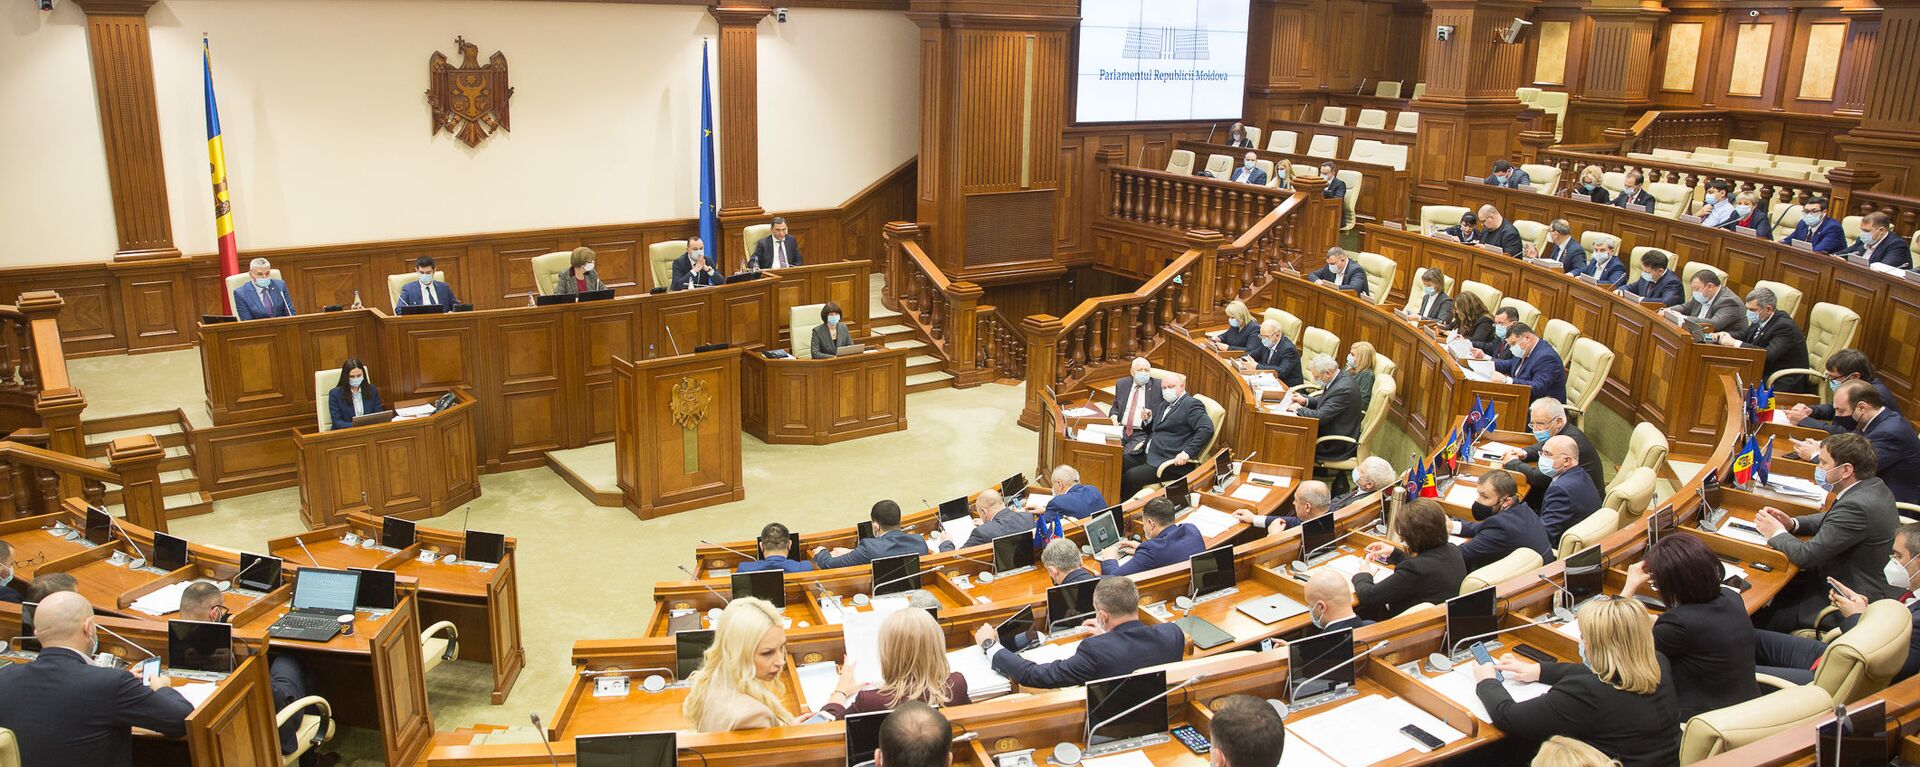 Ședința plenară a Parlamentului, 16 decembrie 2020 - Sputnik Moldova, 1920, 25.03.2021